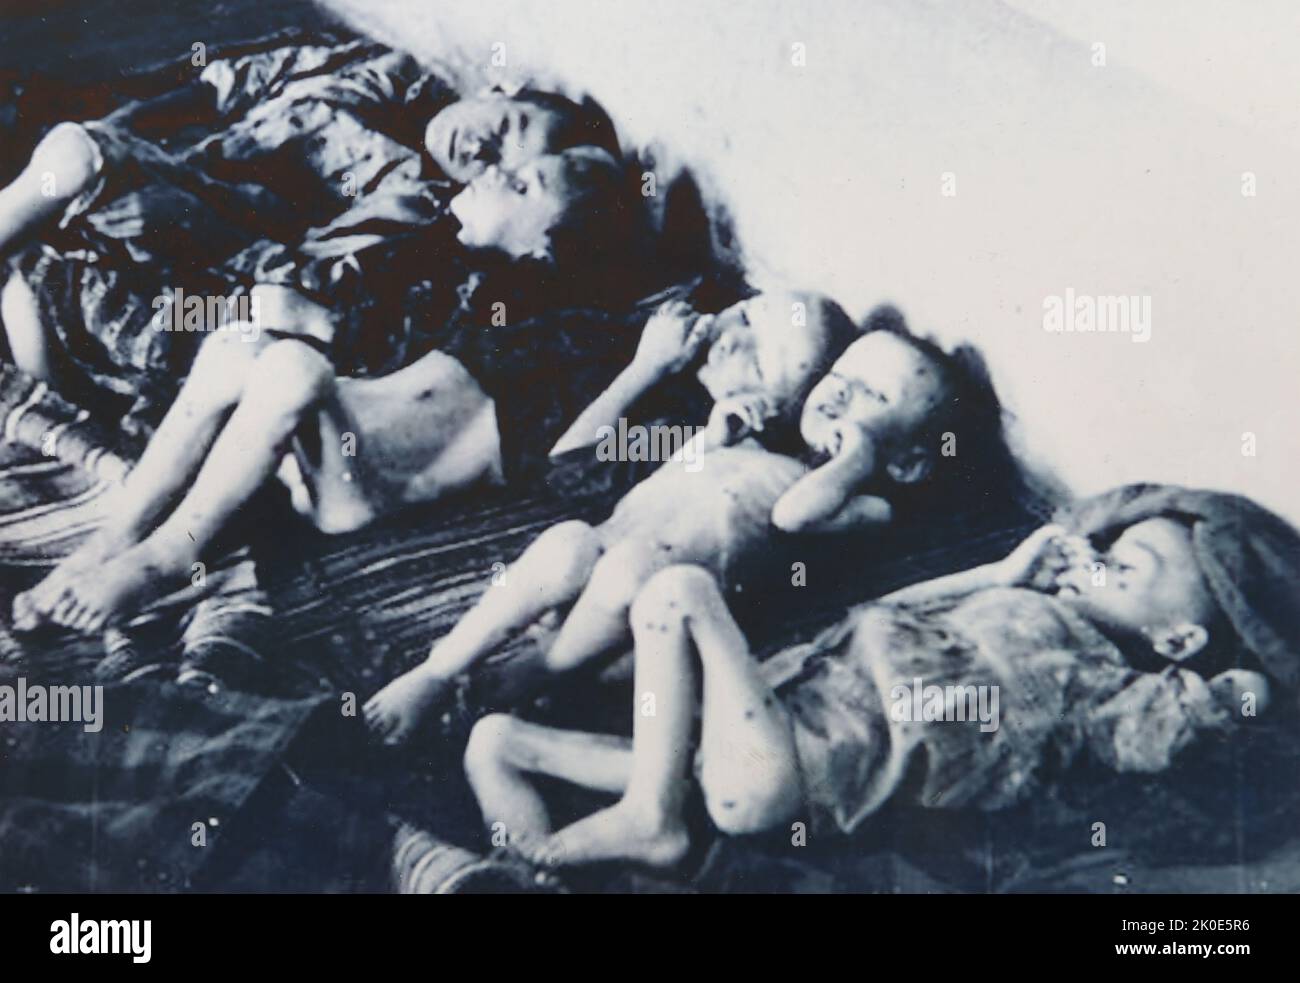 Im von Ustasa kontrollierten Konzentrationslager Jasenovac hungern Kinderhäftlinge. Die Ustasa (kroatische revolutionäre Bewegung) oder Ustase war zwischen 1929 und 1945 eine kroatische faschistische Organisation. Jasenovac war ein Konzentrations- und Vernichtungslager, das im besetzten Jugoslawien während des Zweiten Weltkriegs errichtet wurde Stockfoto